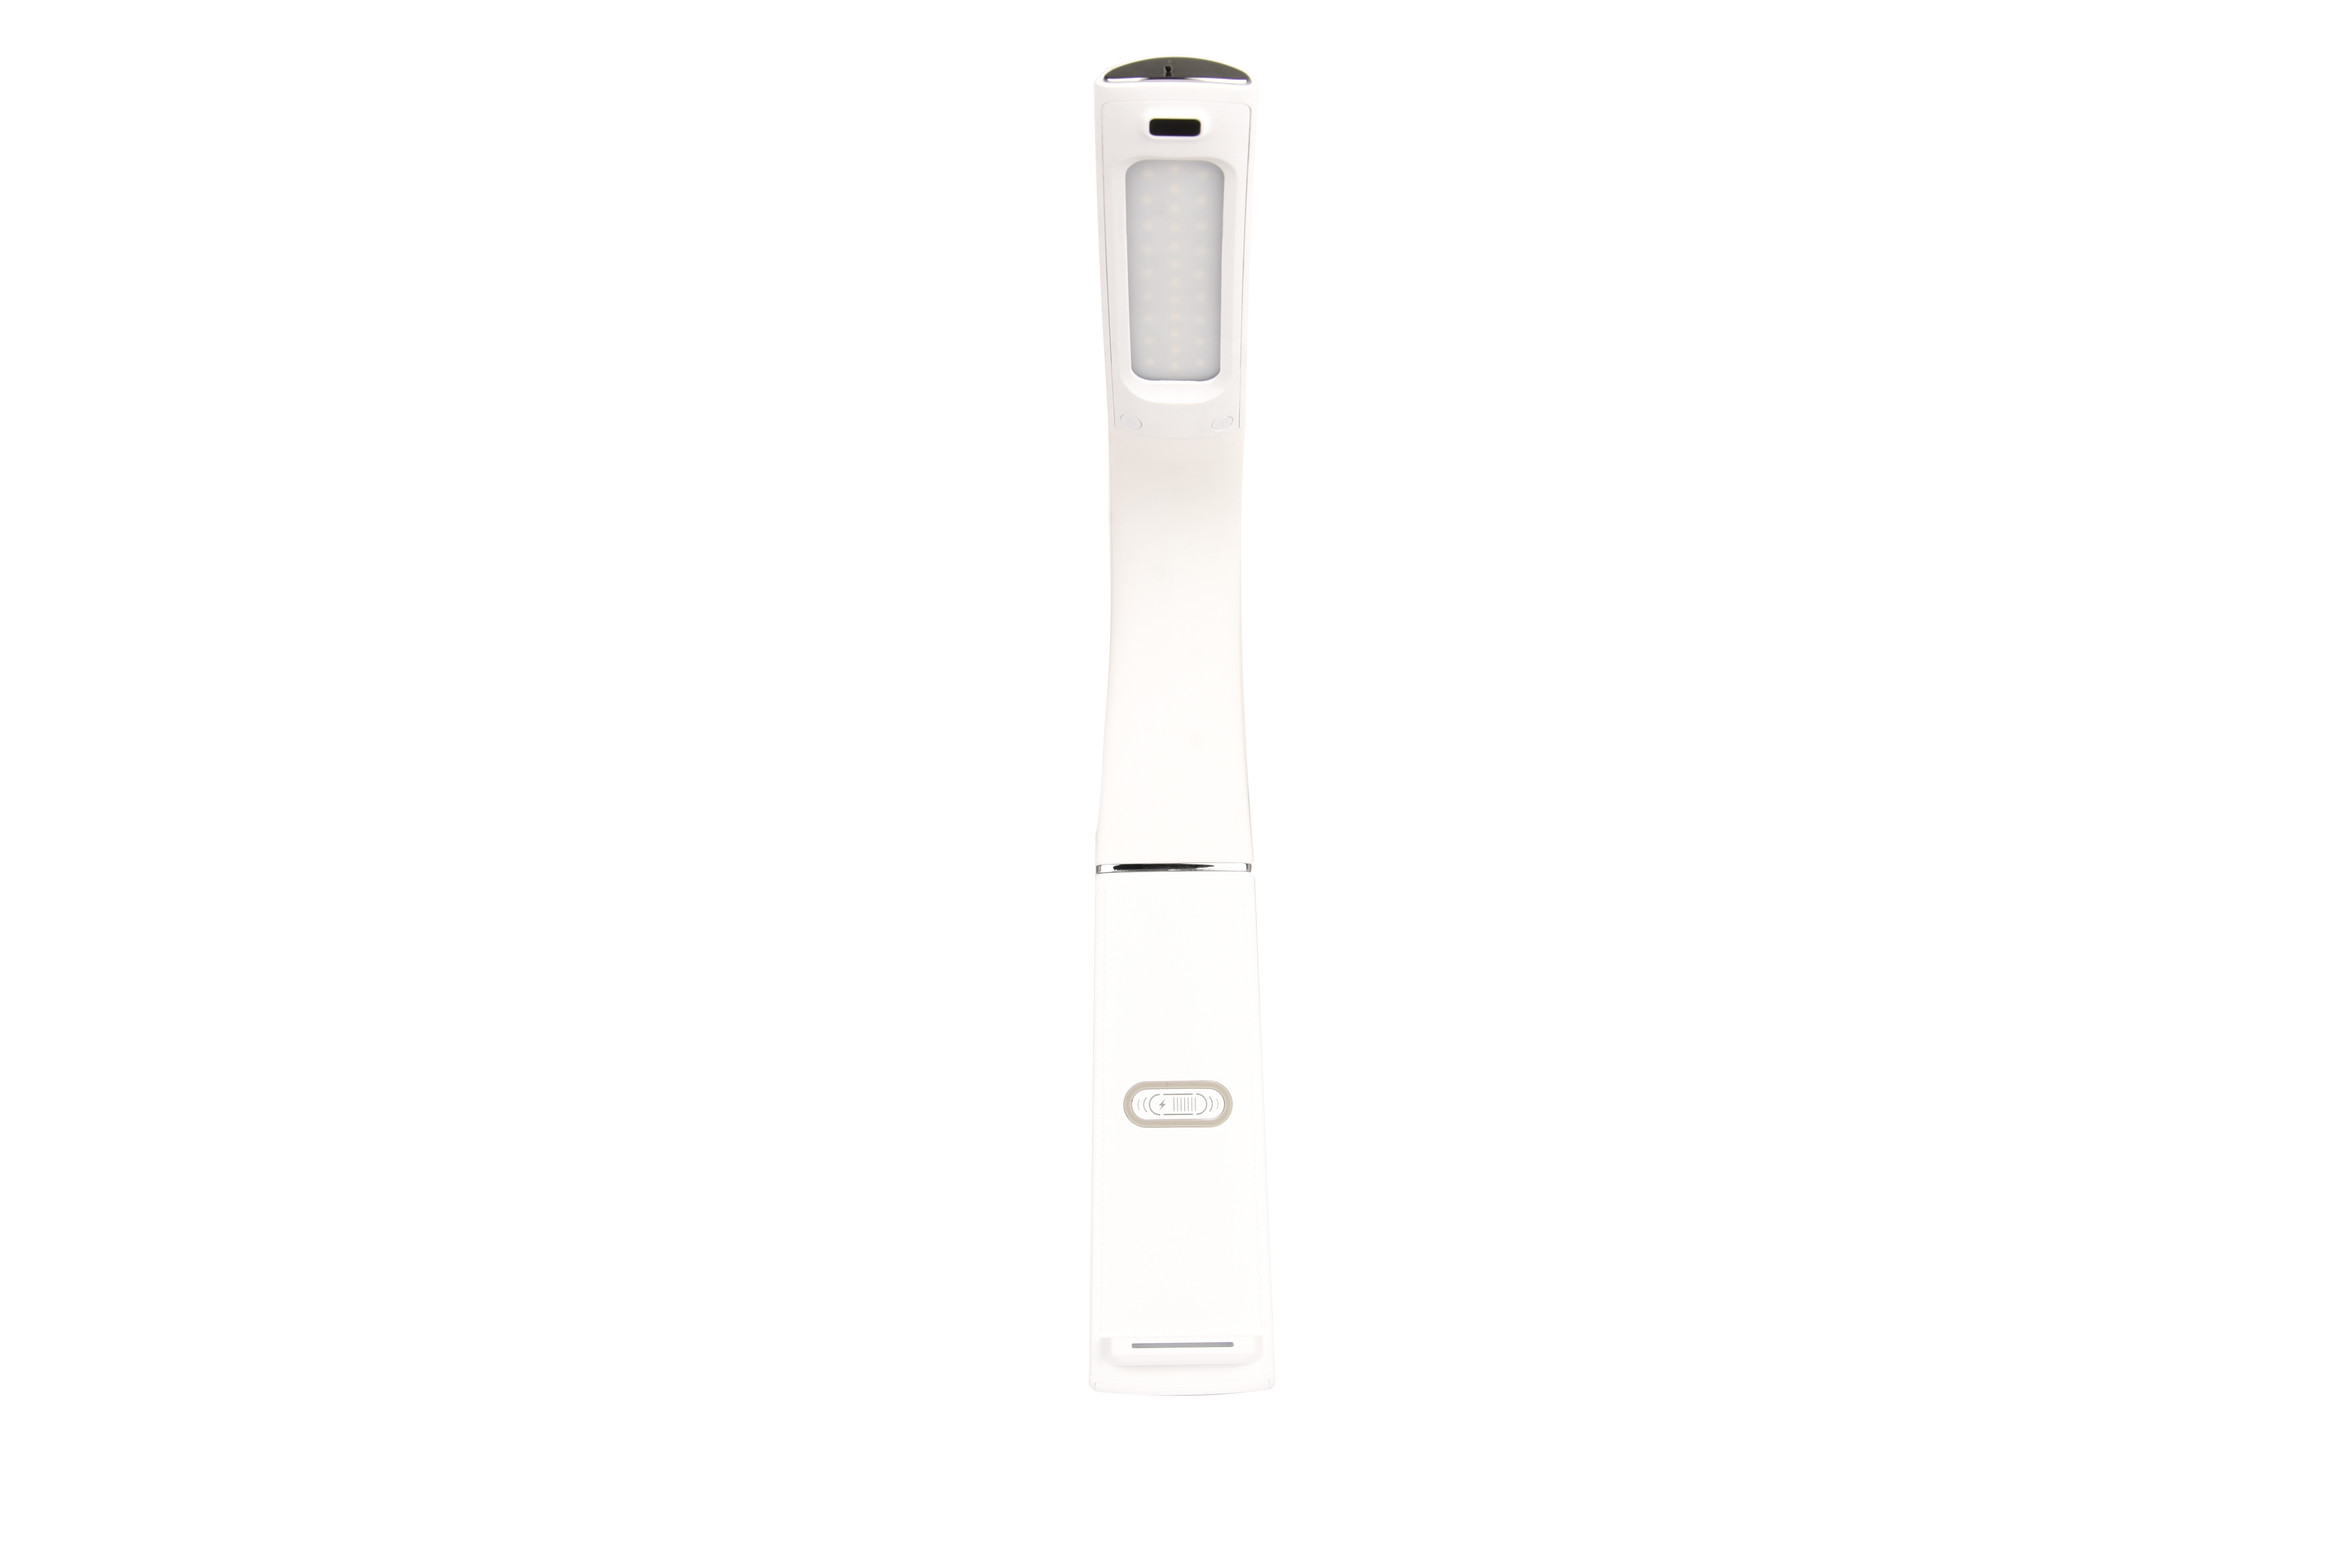  LED Schreibtischleuchte T182-1 USB, wireless charging Funktion, weiß